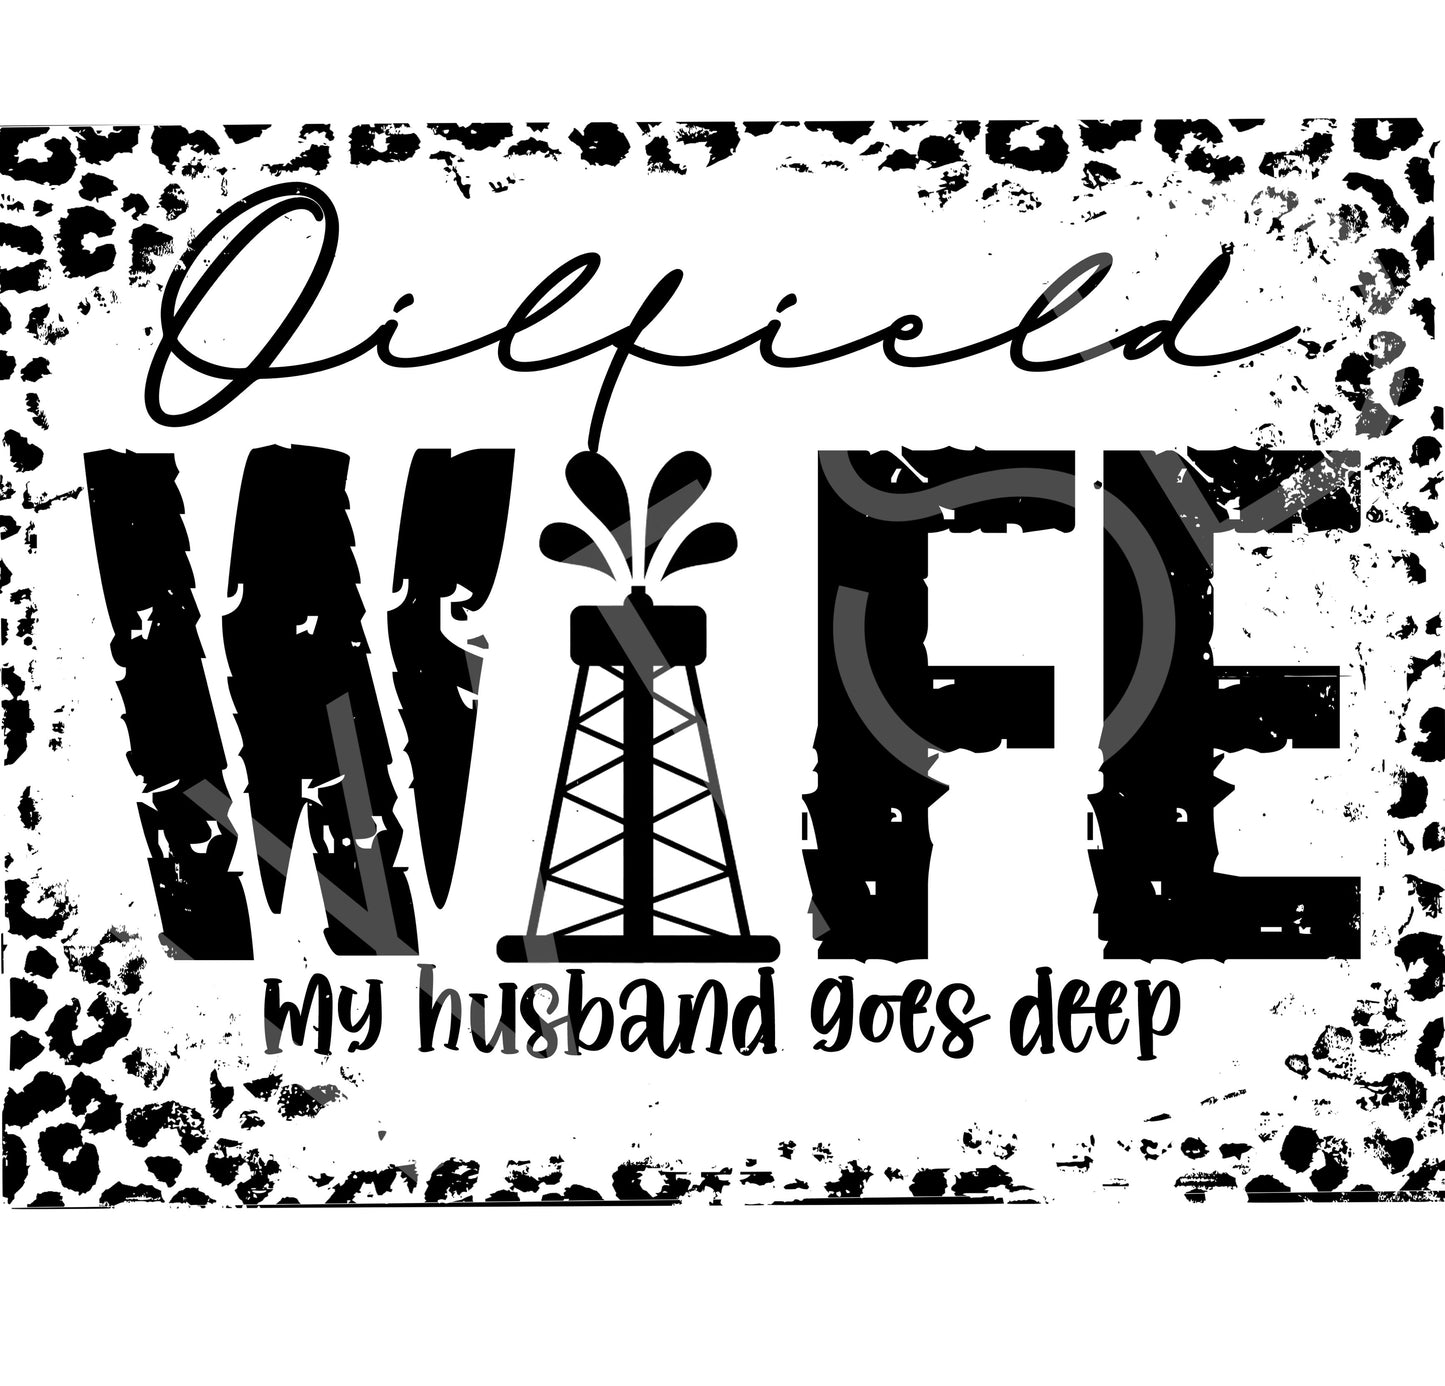 Oilfield wife